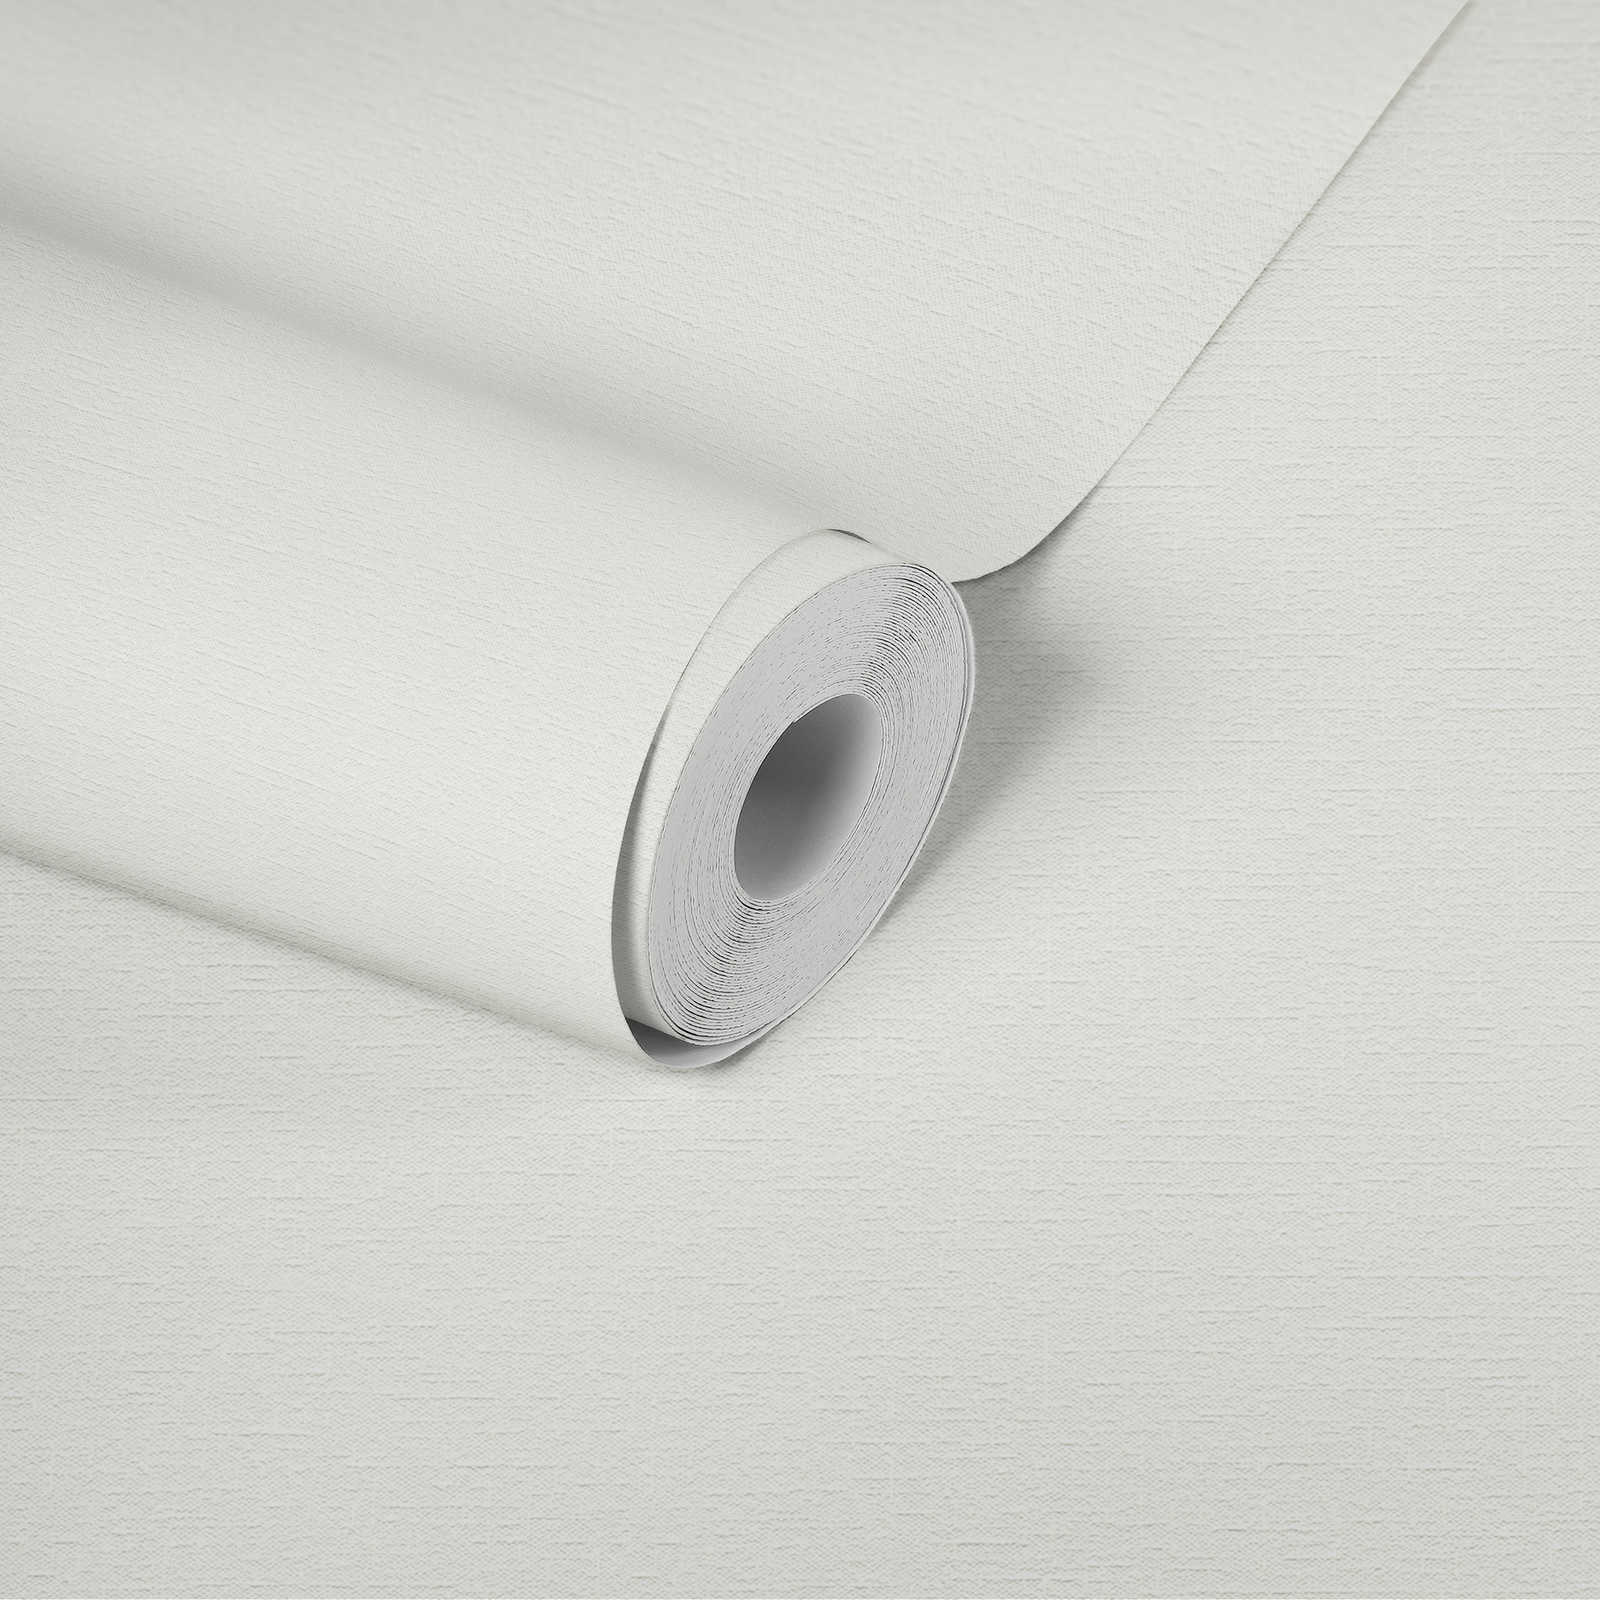             Papier peint intissé blanc uni avec structure textile
        